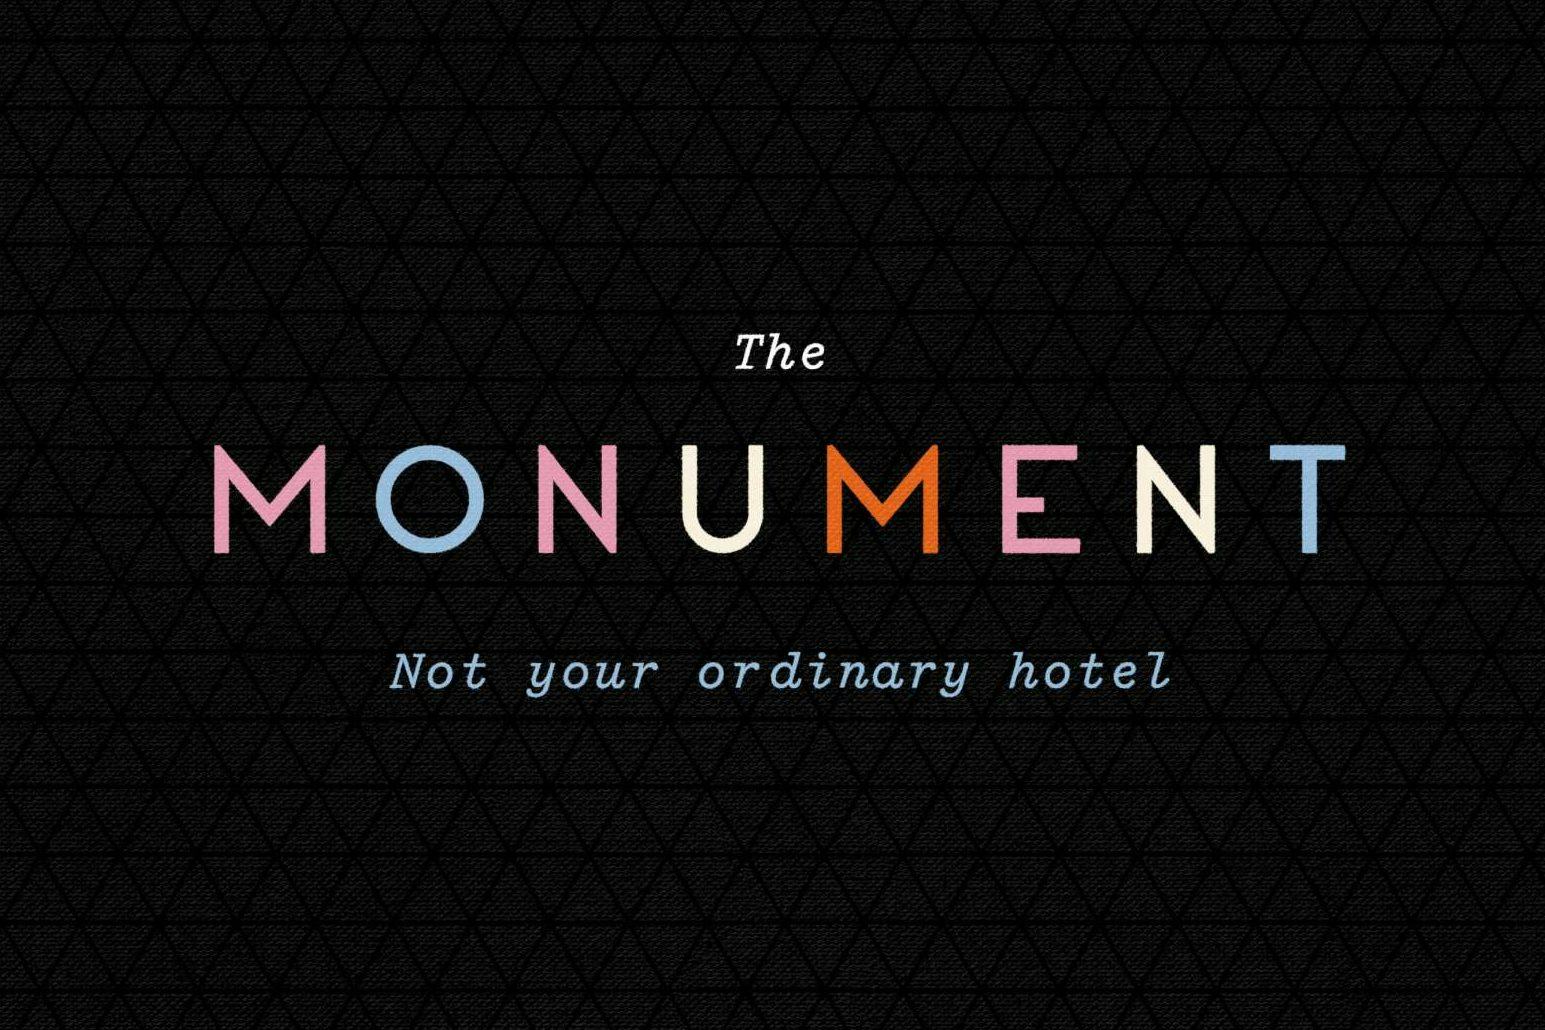 Hotel The Monument opent eind oktober in Den Haag